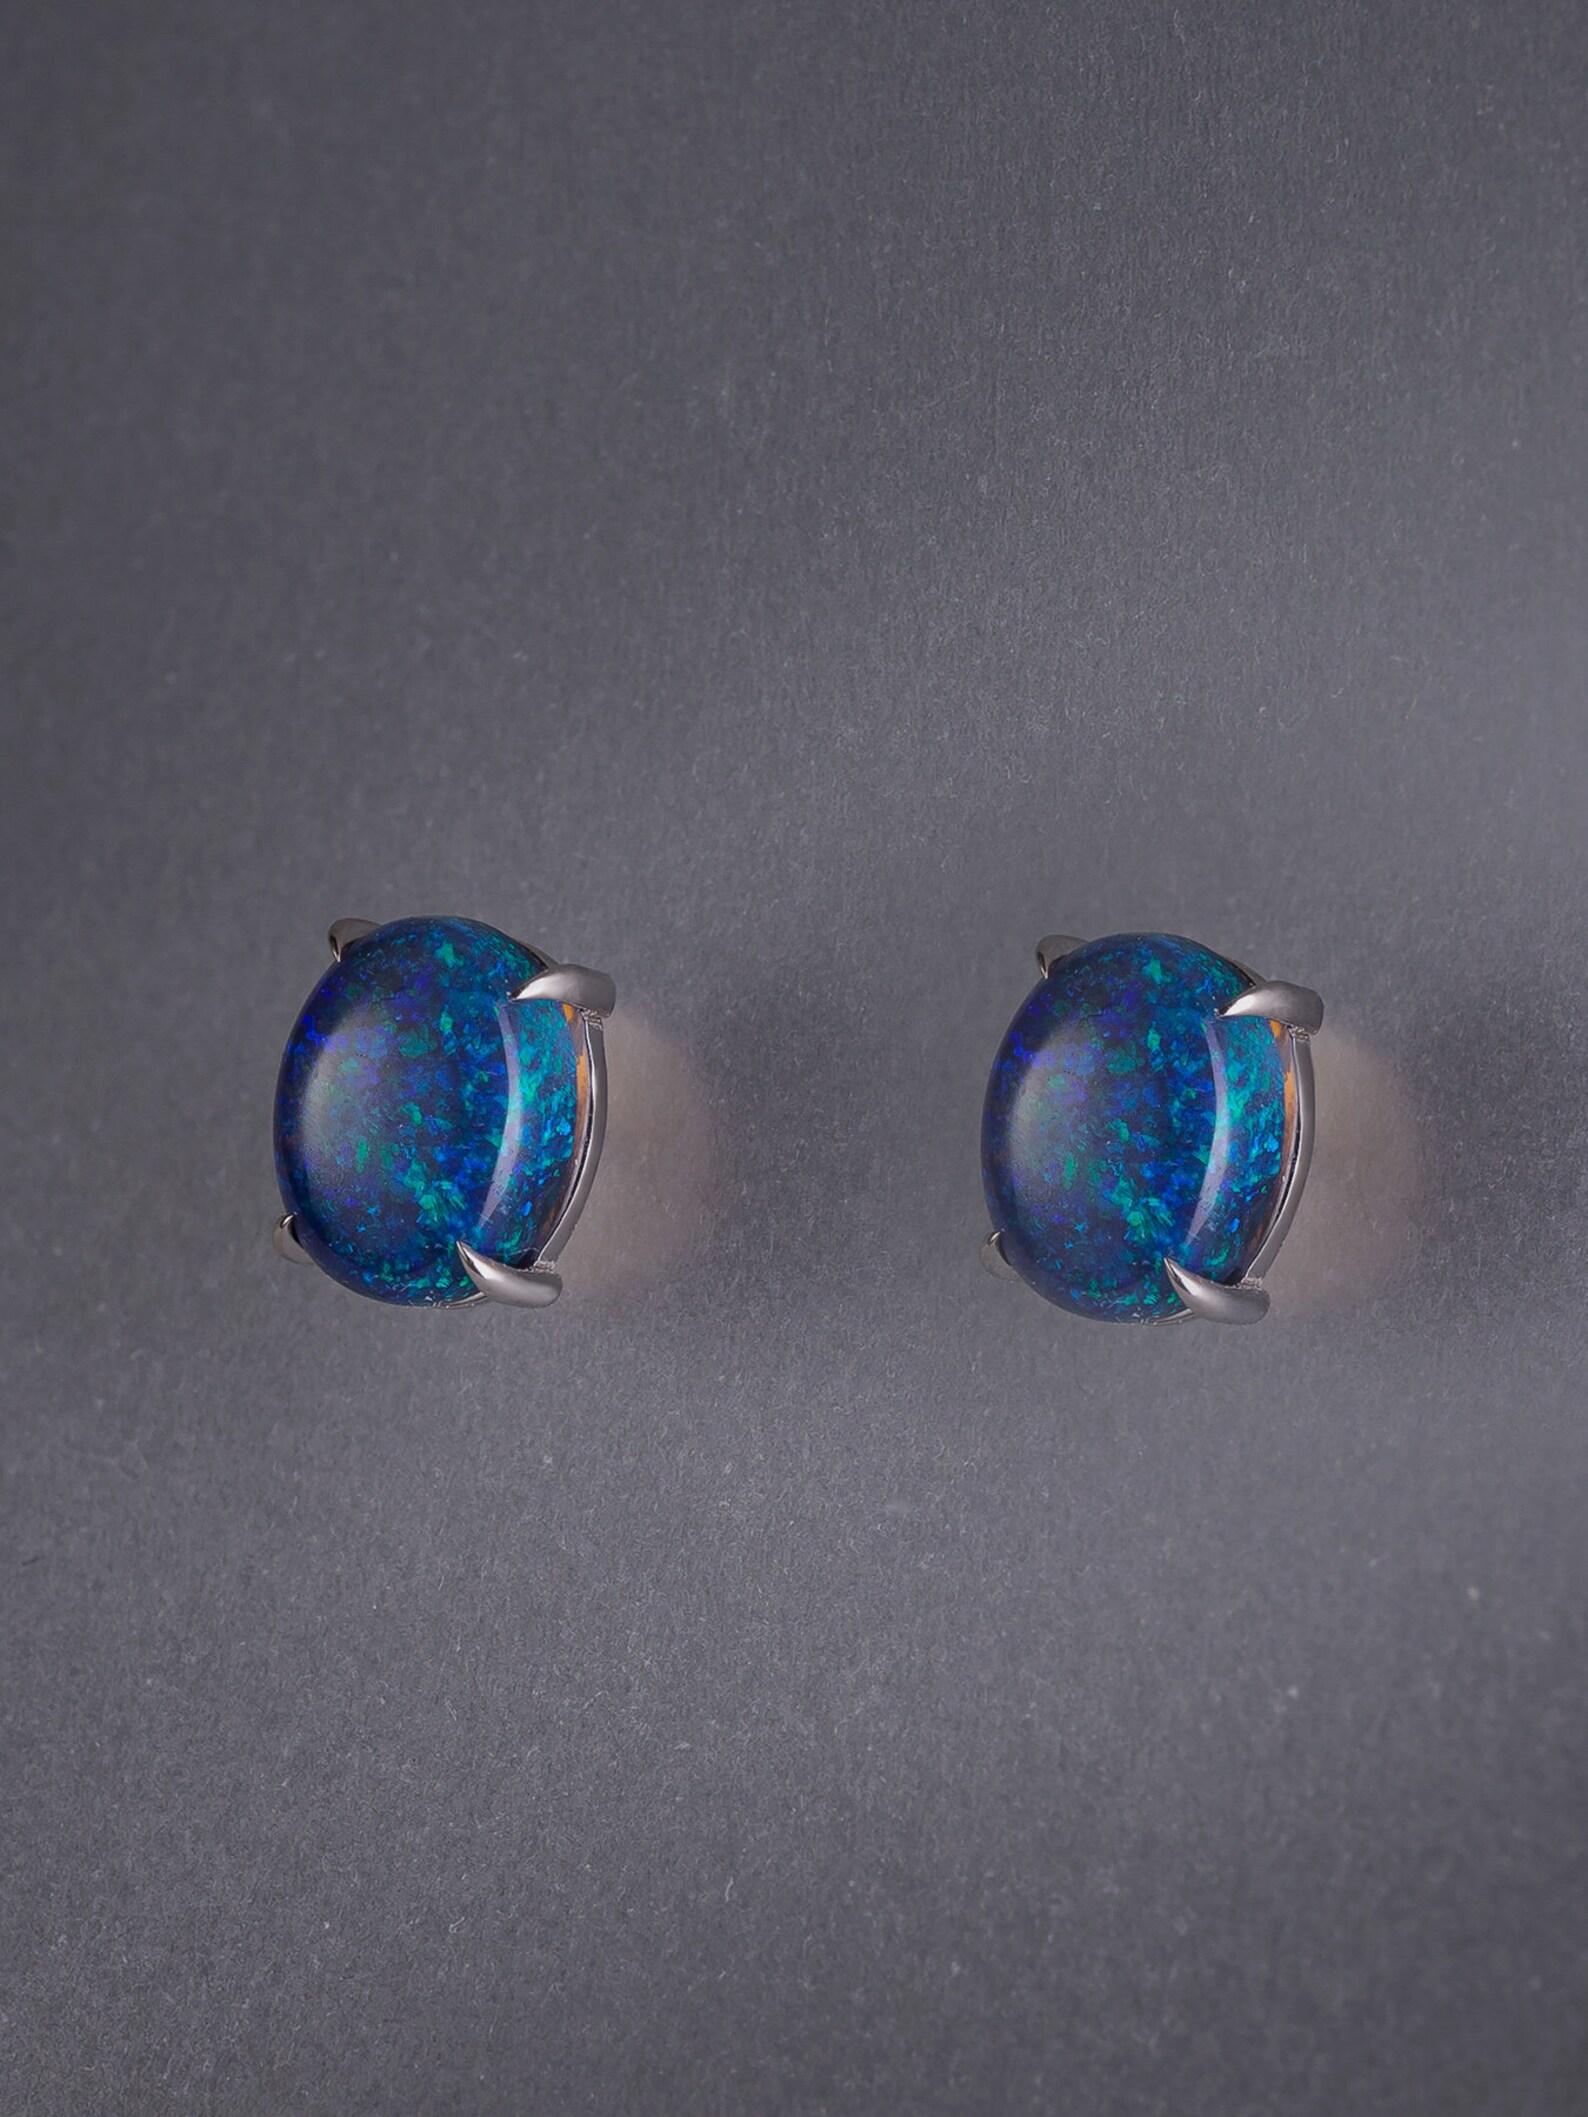 black opal earrings studs